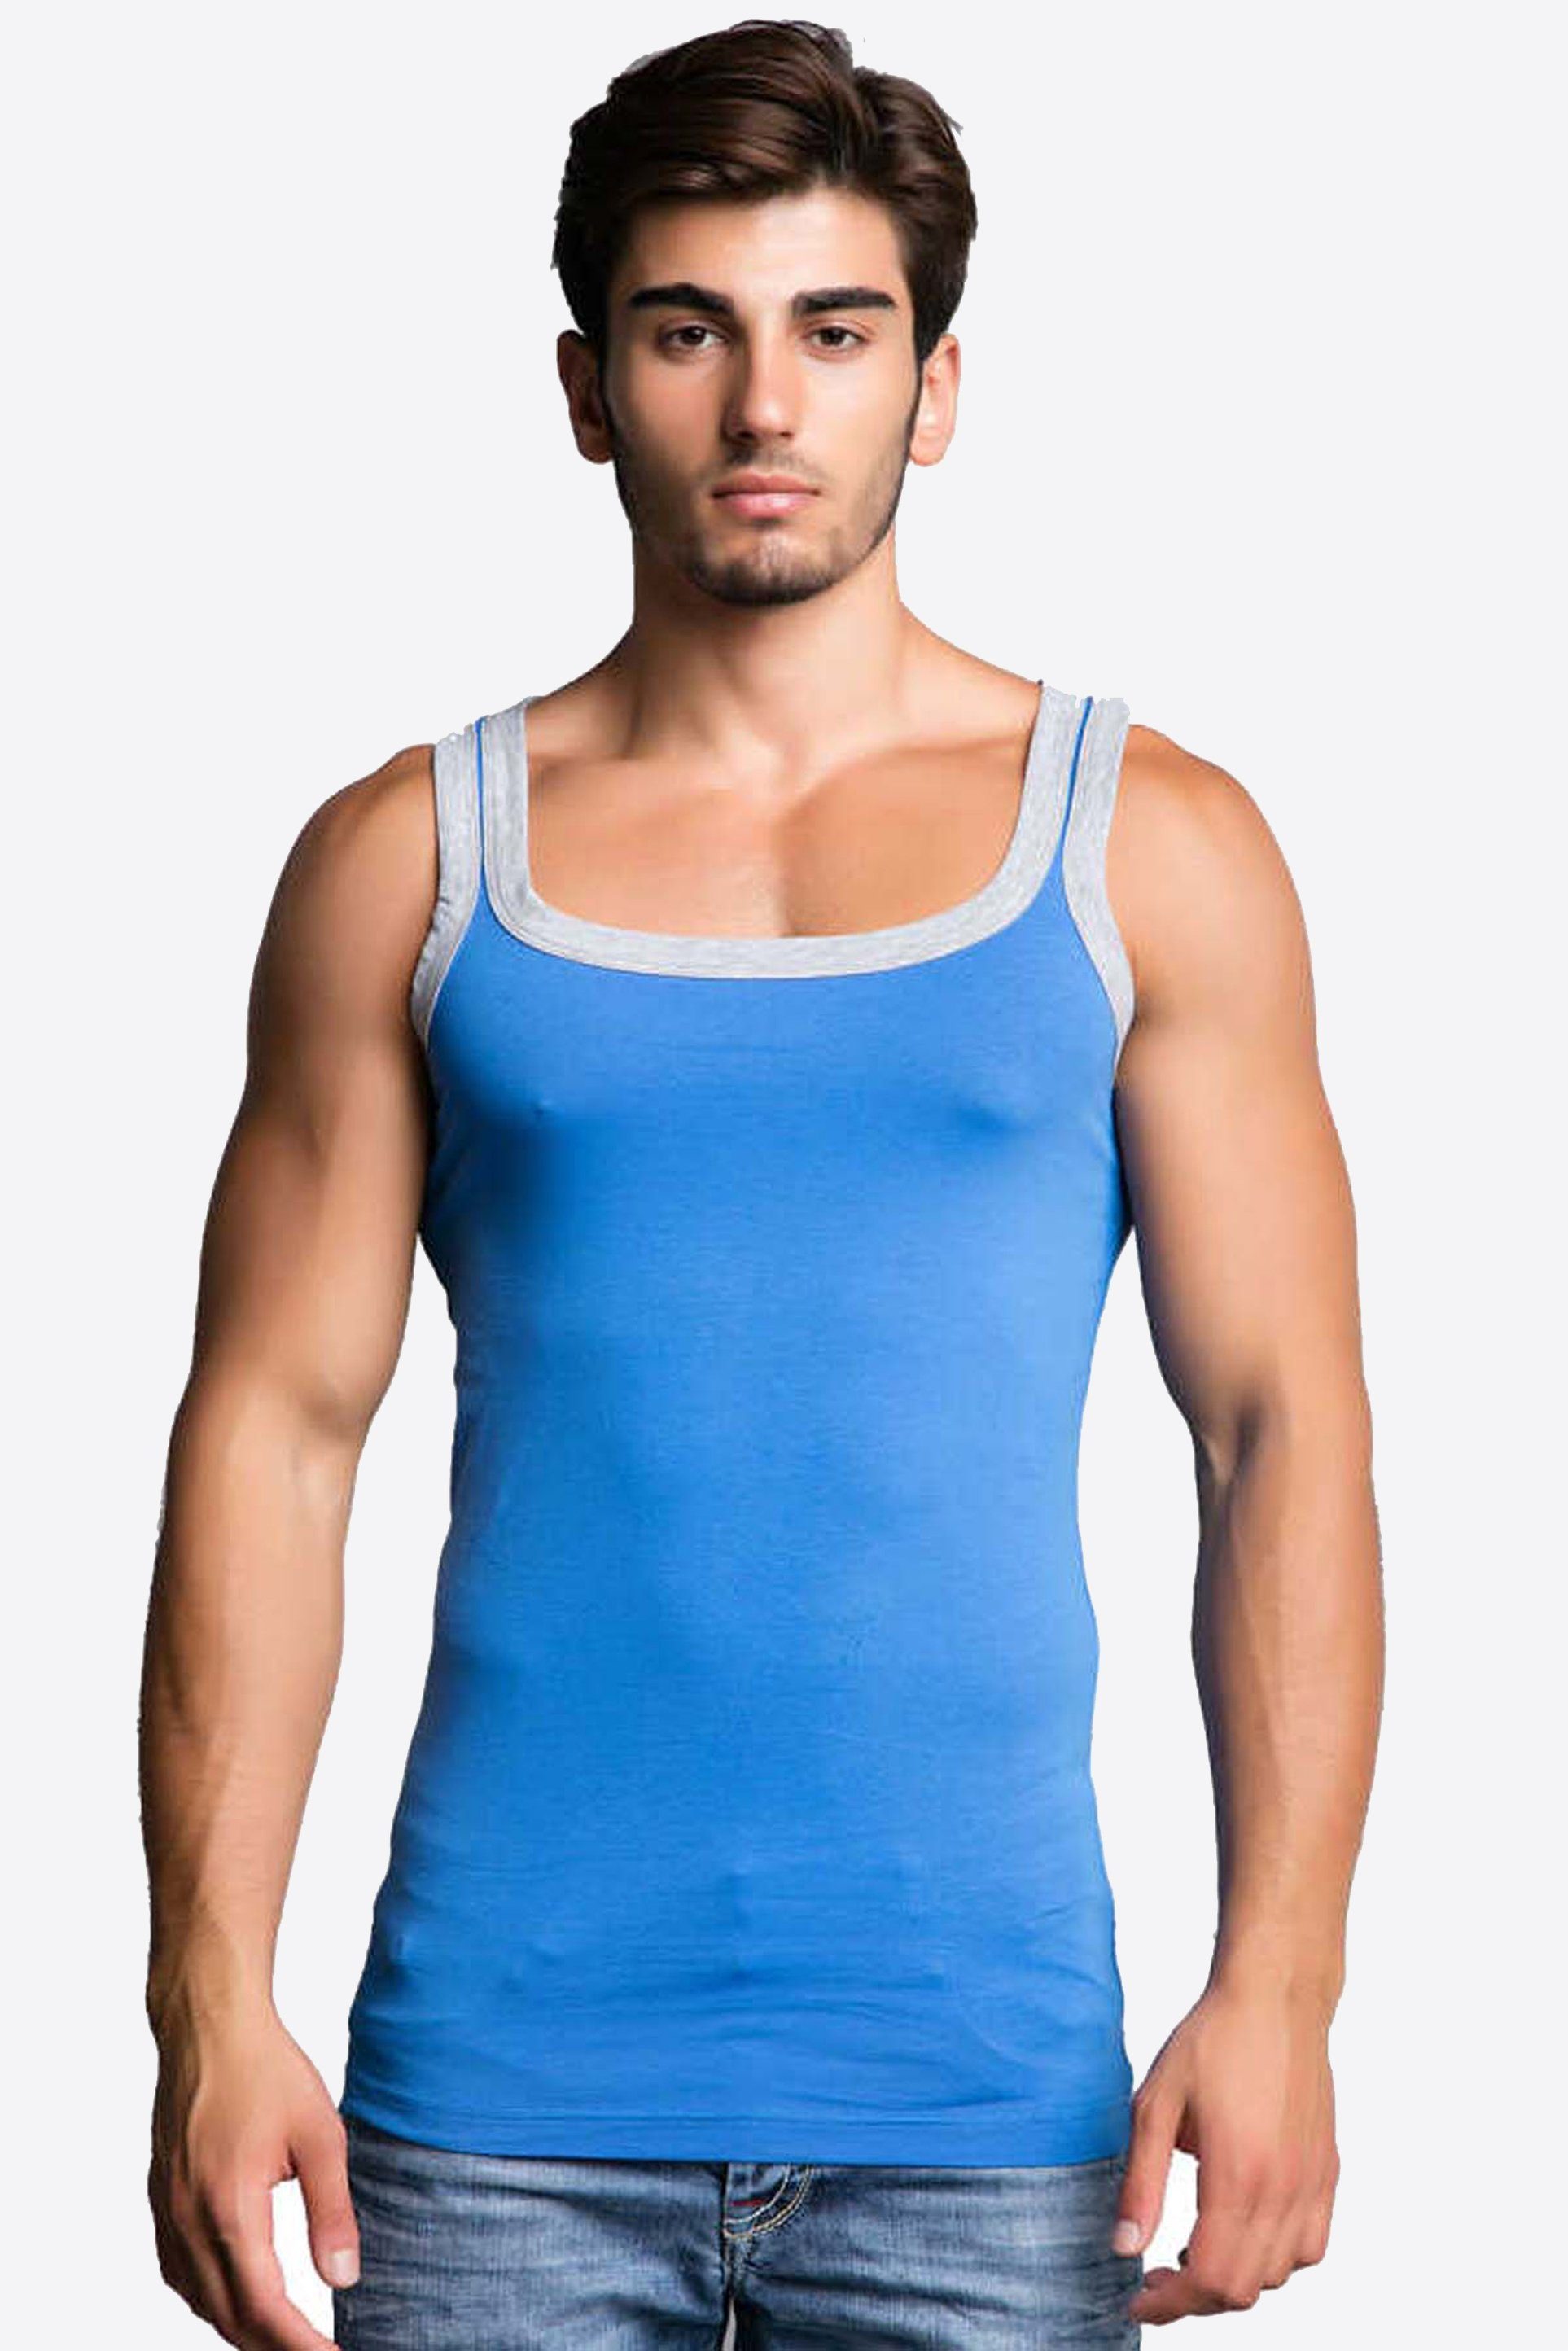 Cipo T-Shirt & hellblau Design in sportlichem Baxx